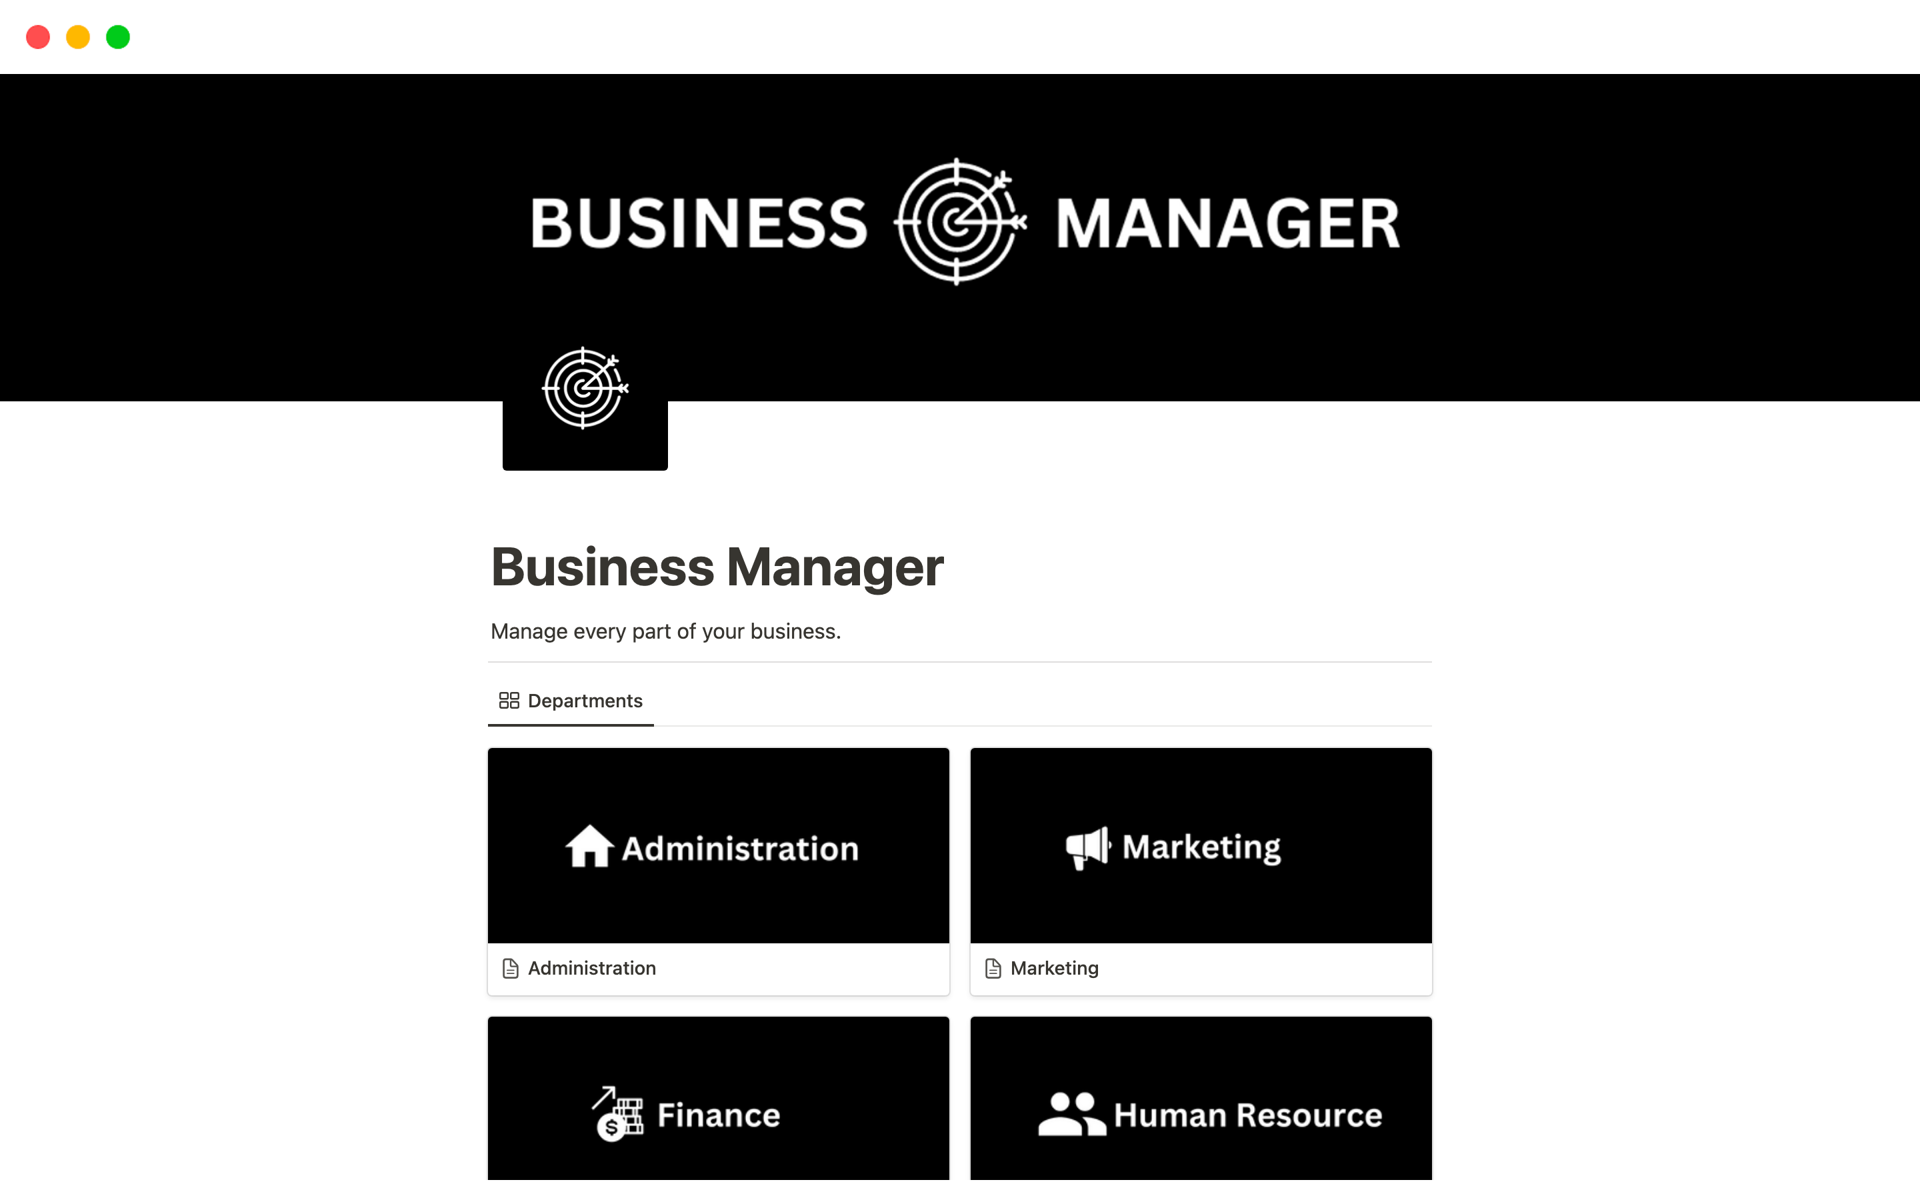 Vista previa de plantilla para Business Manager 